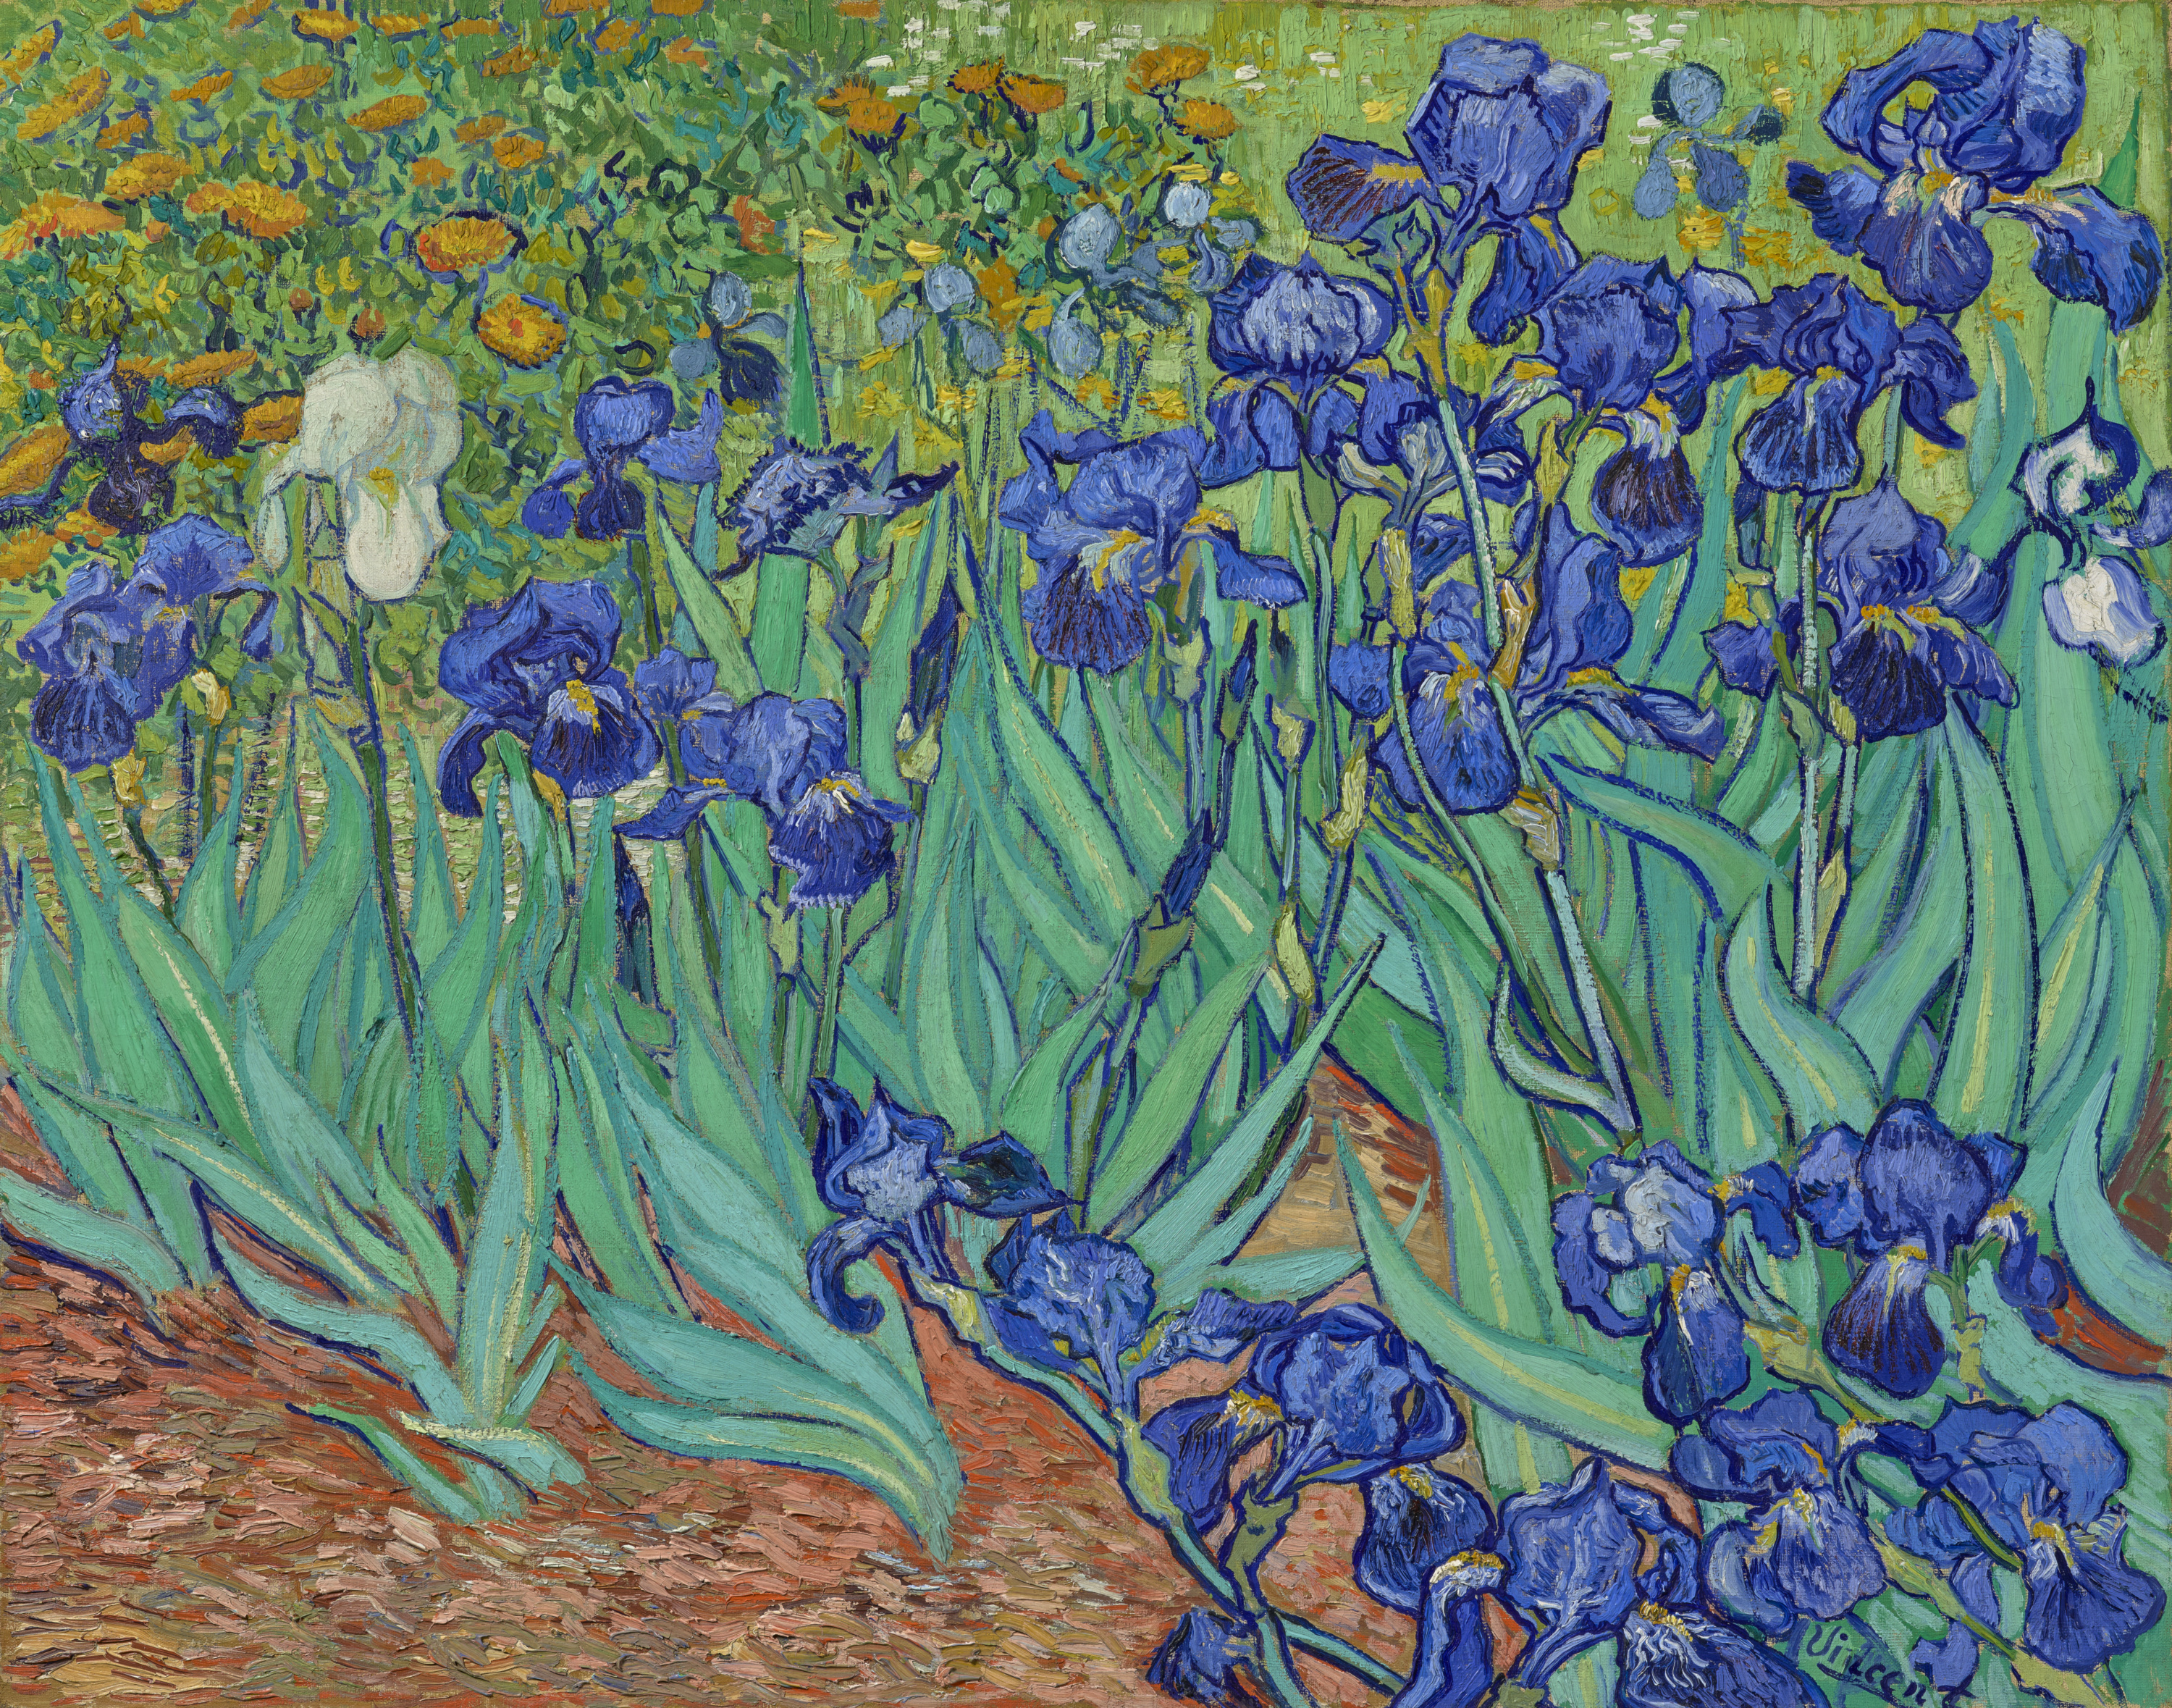 Irises by Vincent van Gogh - 1889 - 74.3 × 94.3 cm J. Paul Getty Museum